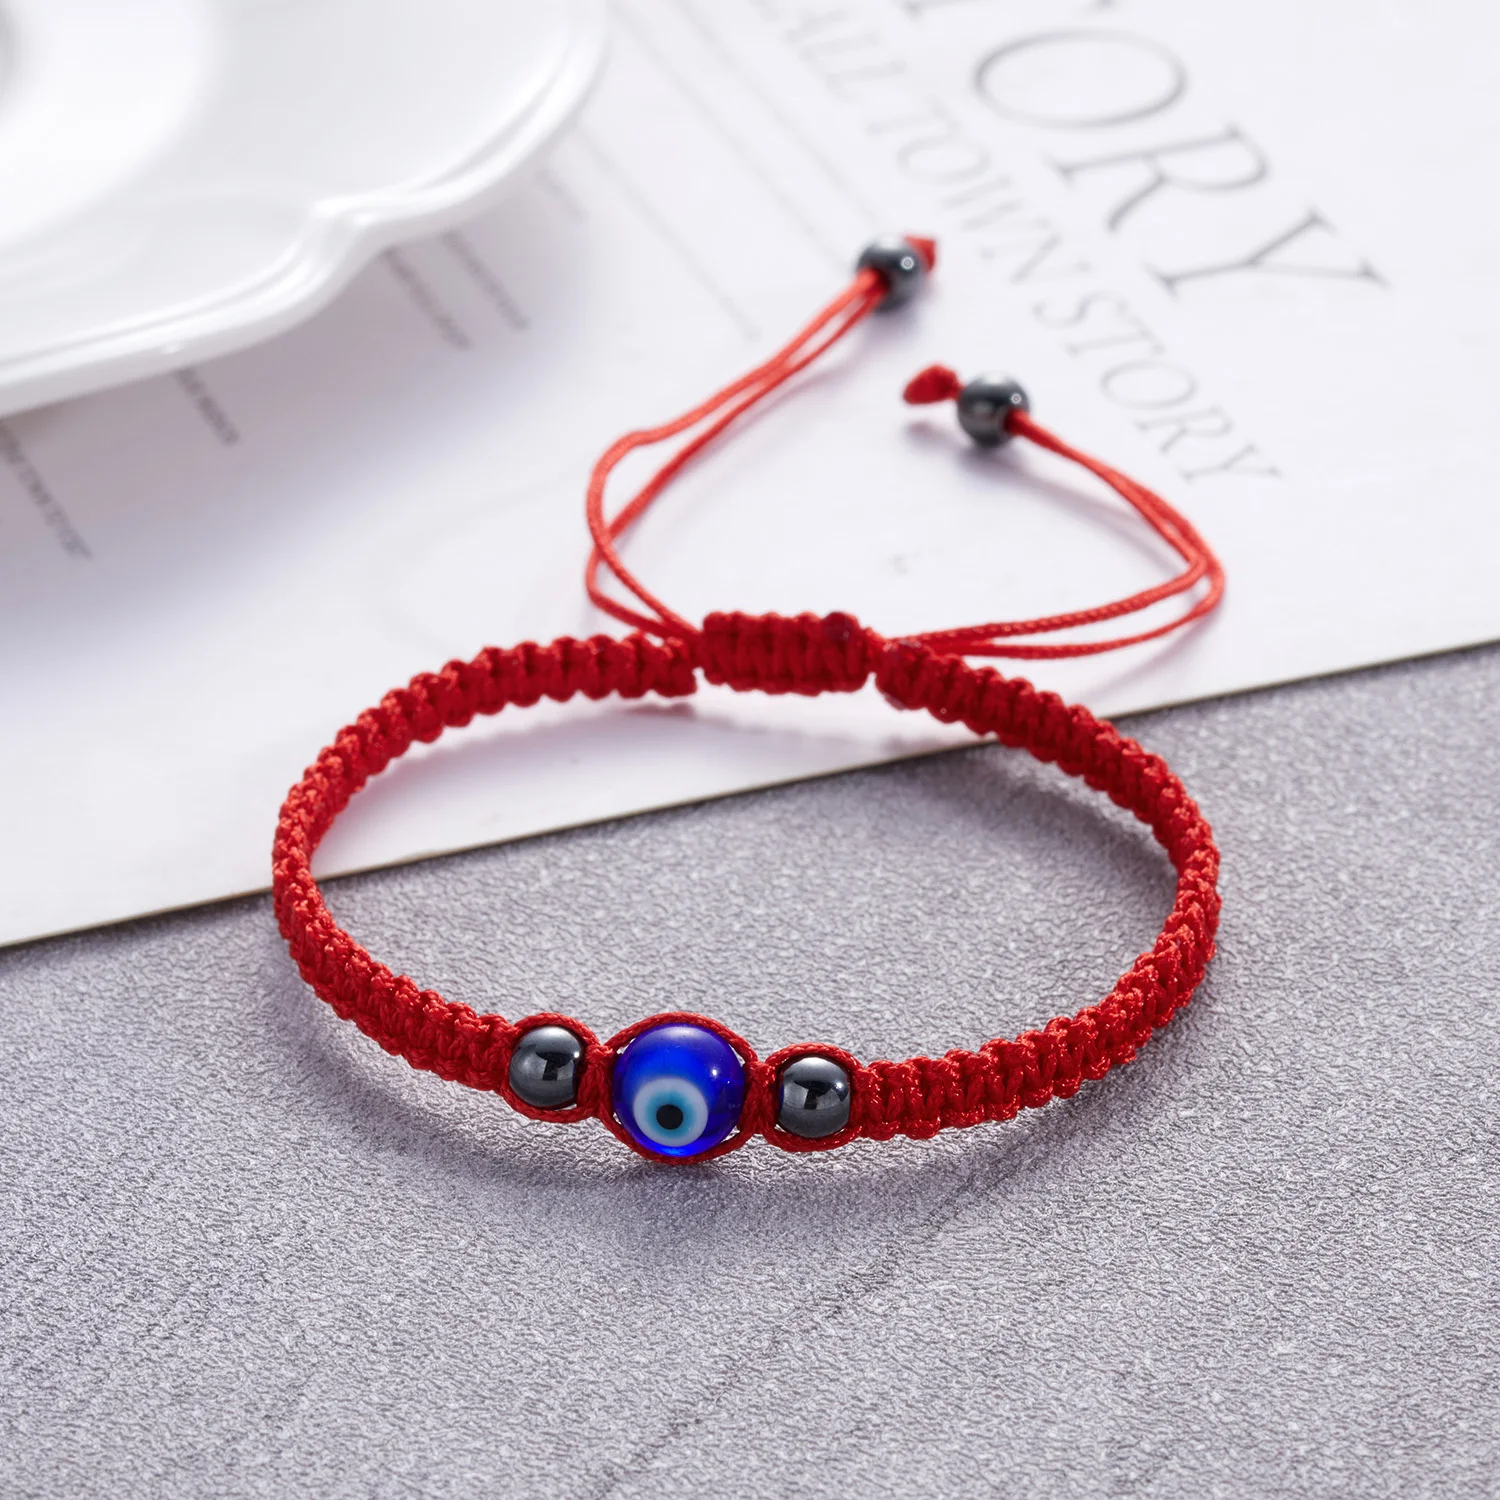 

New Evil Eye Braided Bracelet For Women Men Lucky Red Black Color Thread Chain Couple Handmade Prayer Bangles Jewelry Gift